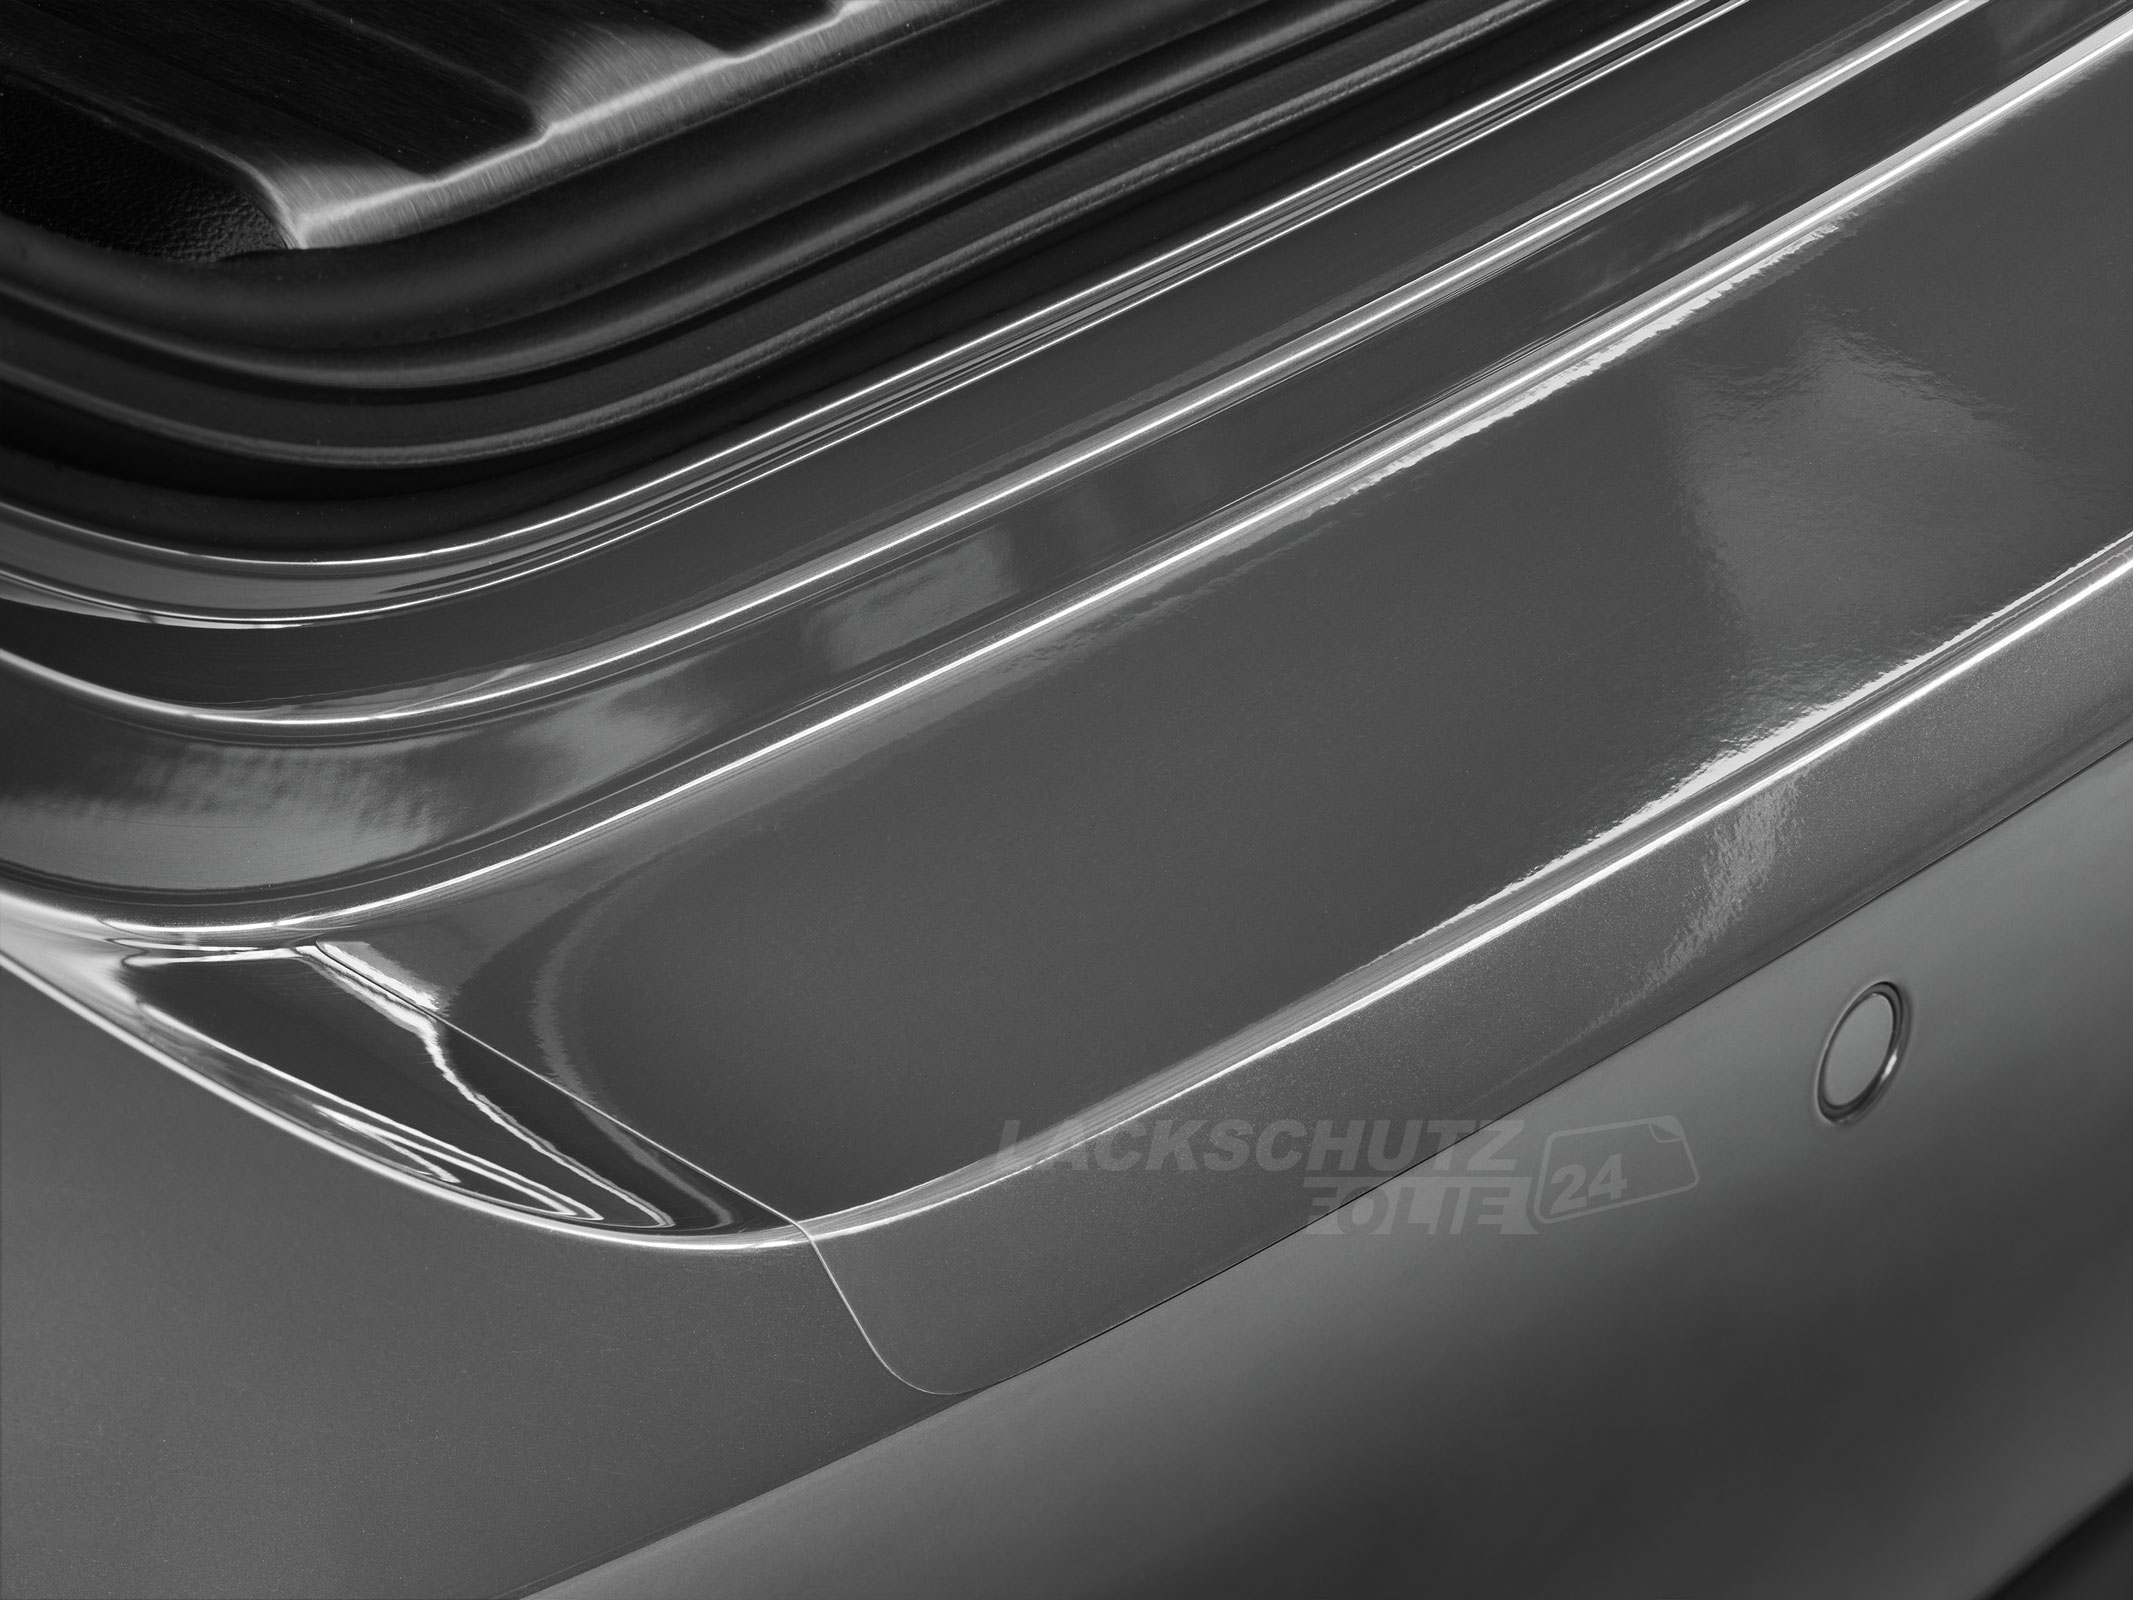 Ladekantenschutzfolie - Transparent Glatt Hochglänzend 240 µm stark für Mitsubishi Outlander (III) PHEV, Typ CWo, Facelift, ab BJ 2015